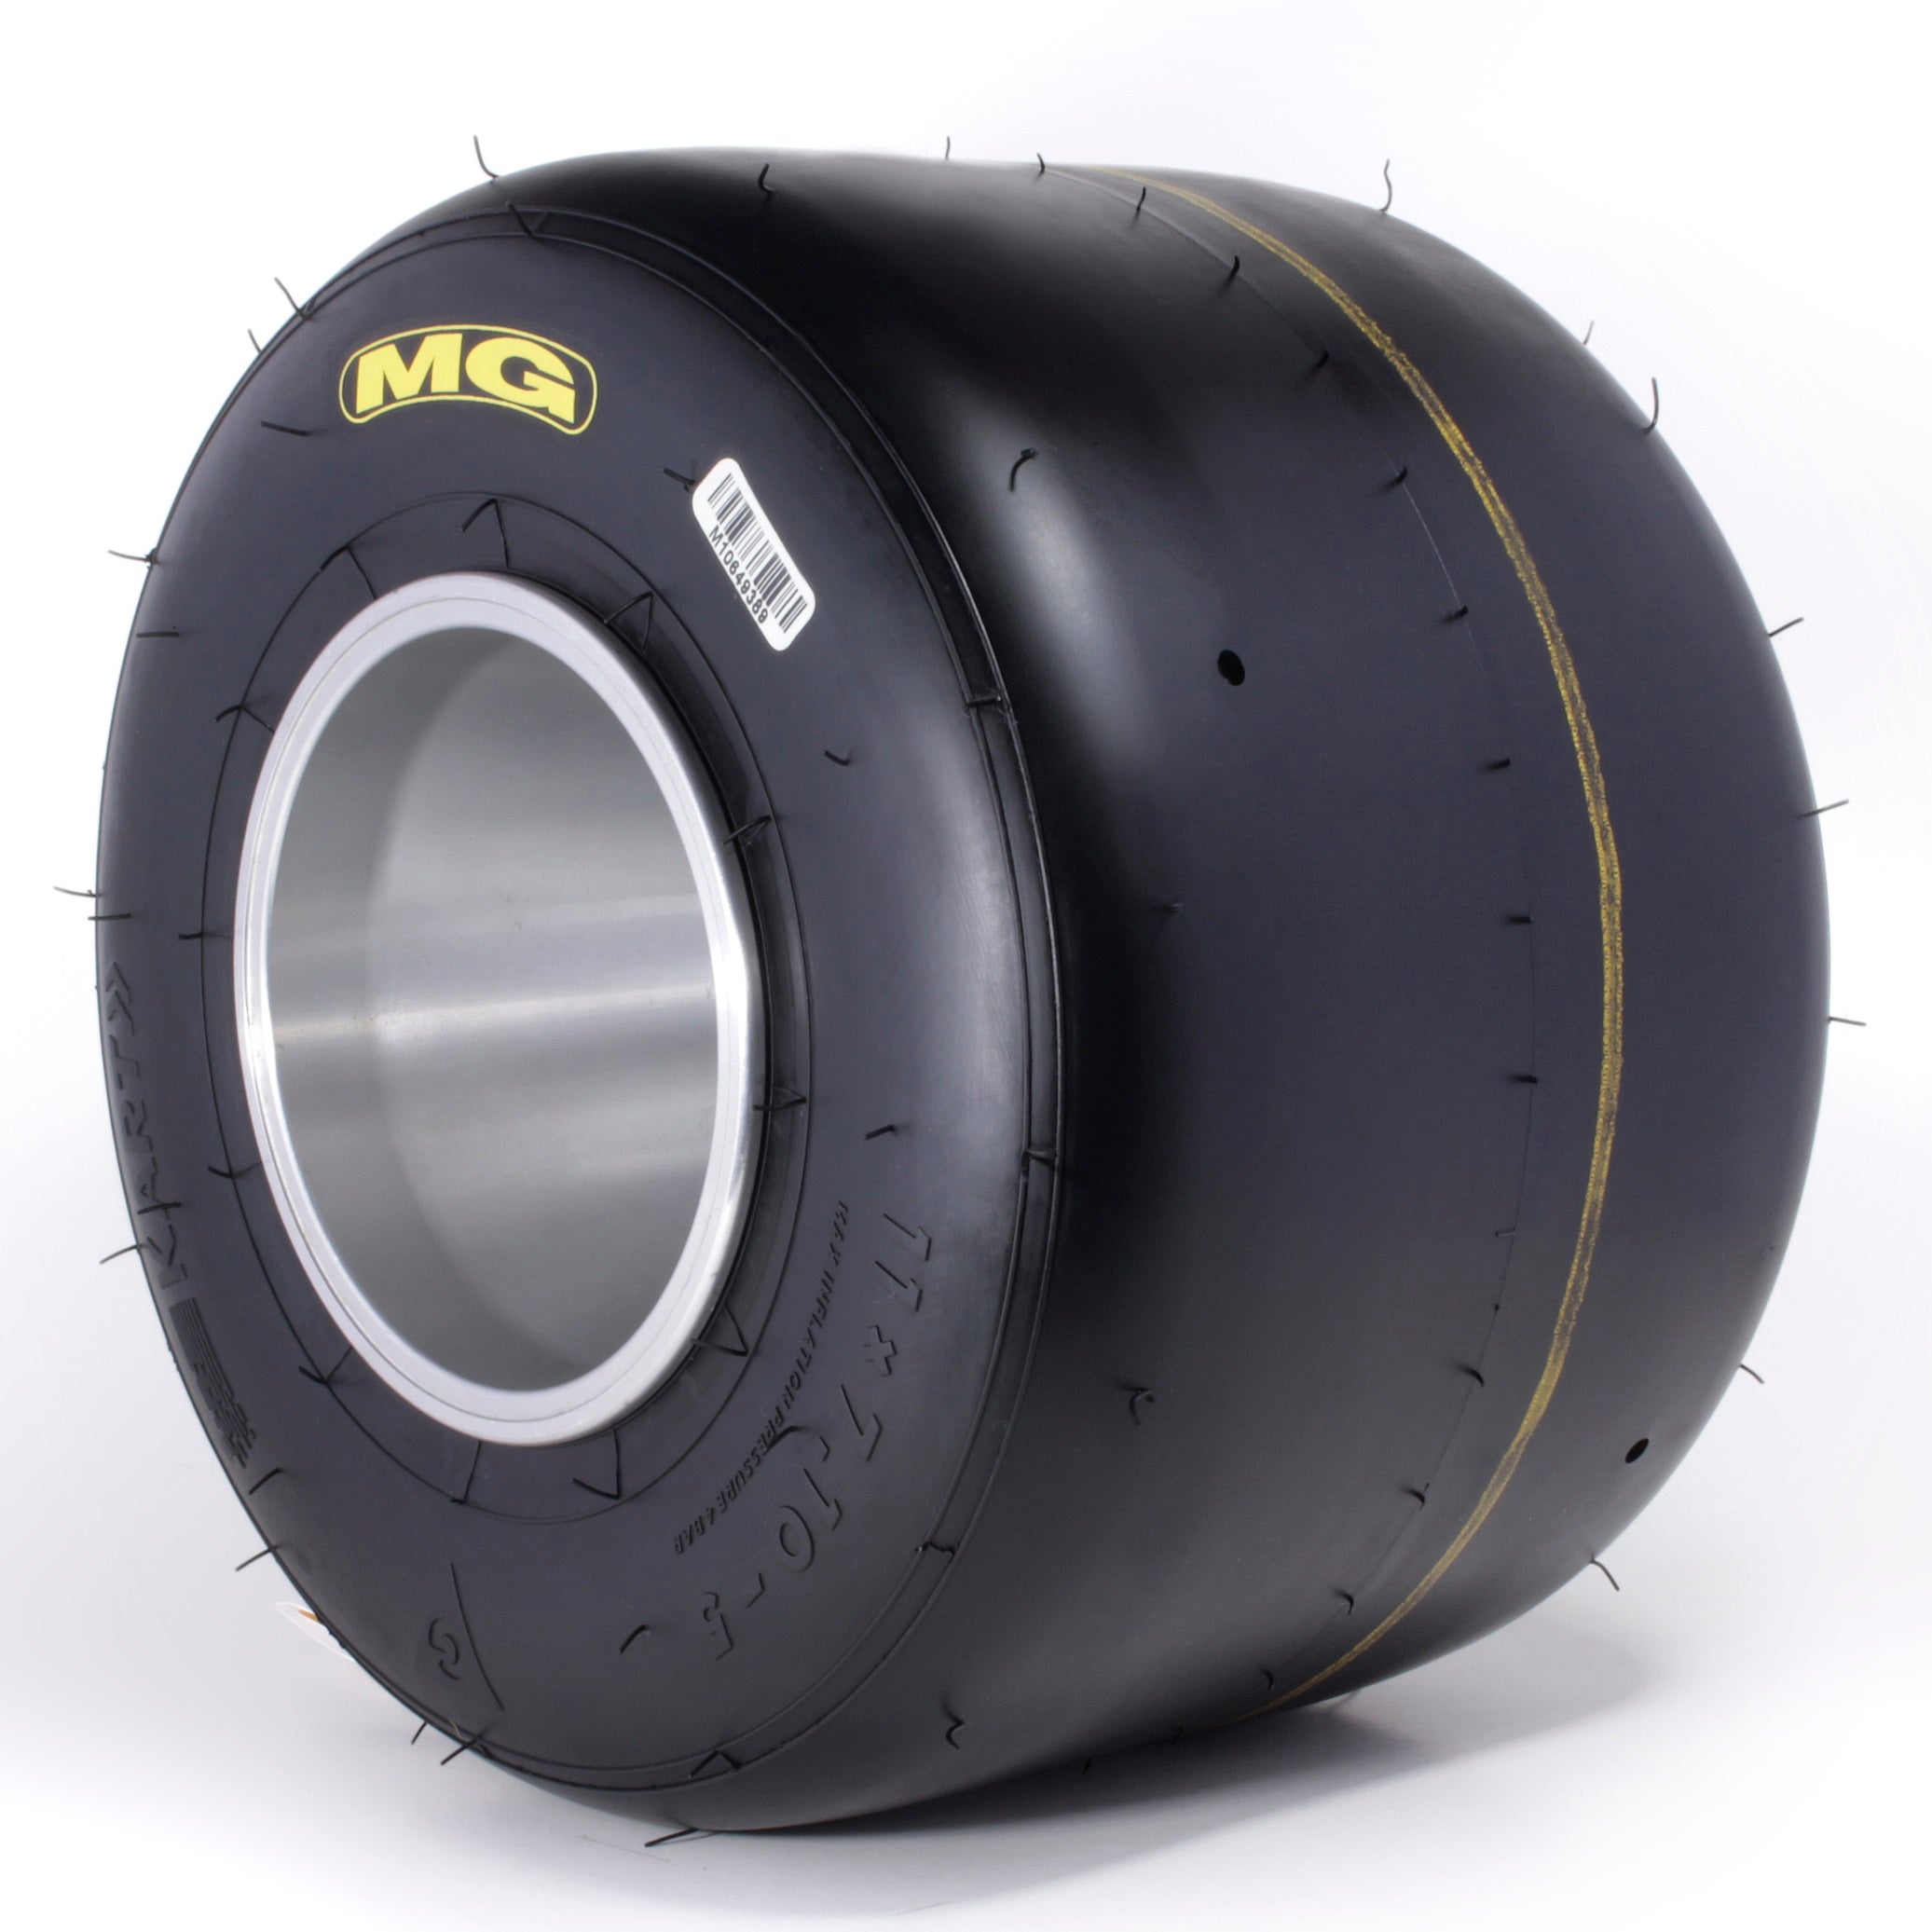 MG Tyre SM CIK/FIA 2020 KZ